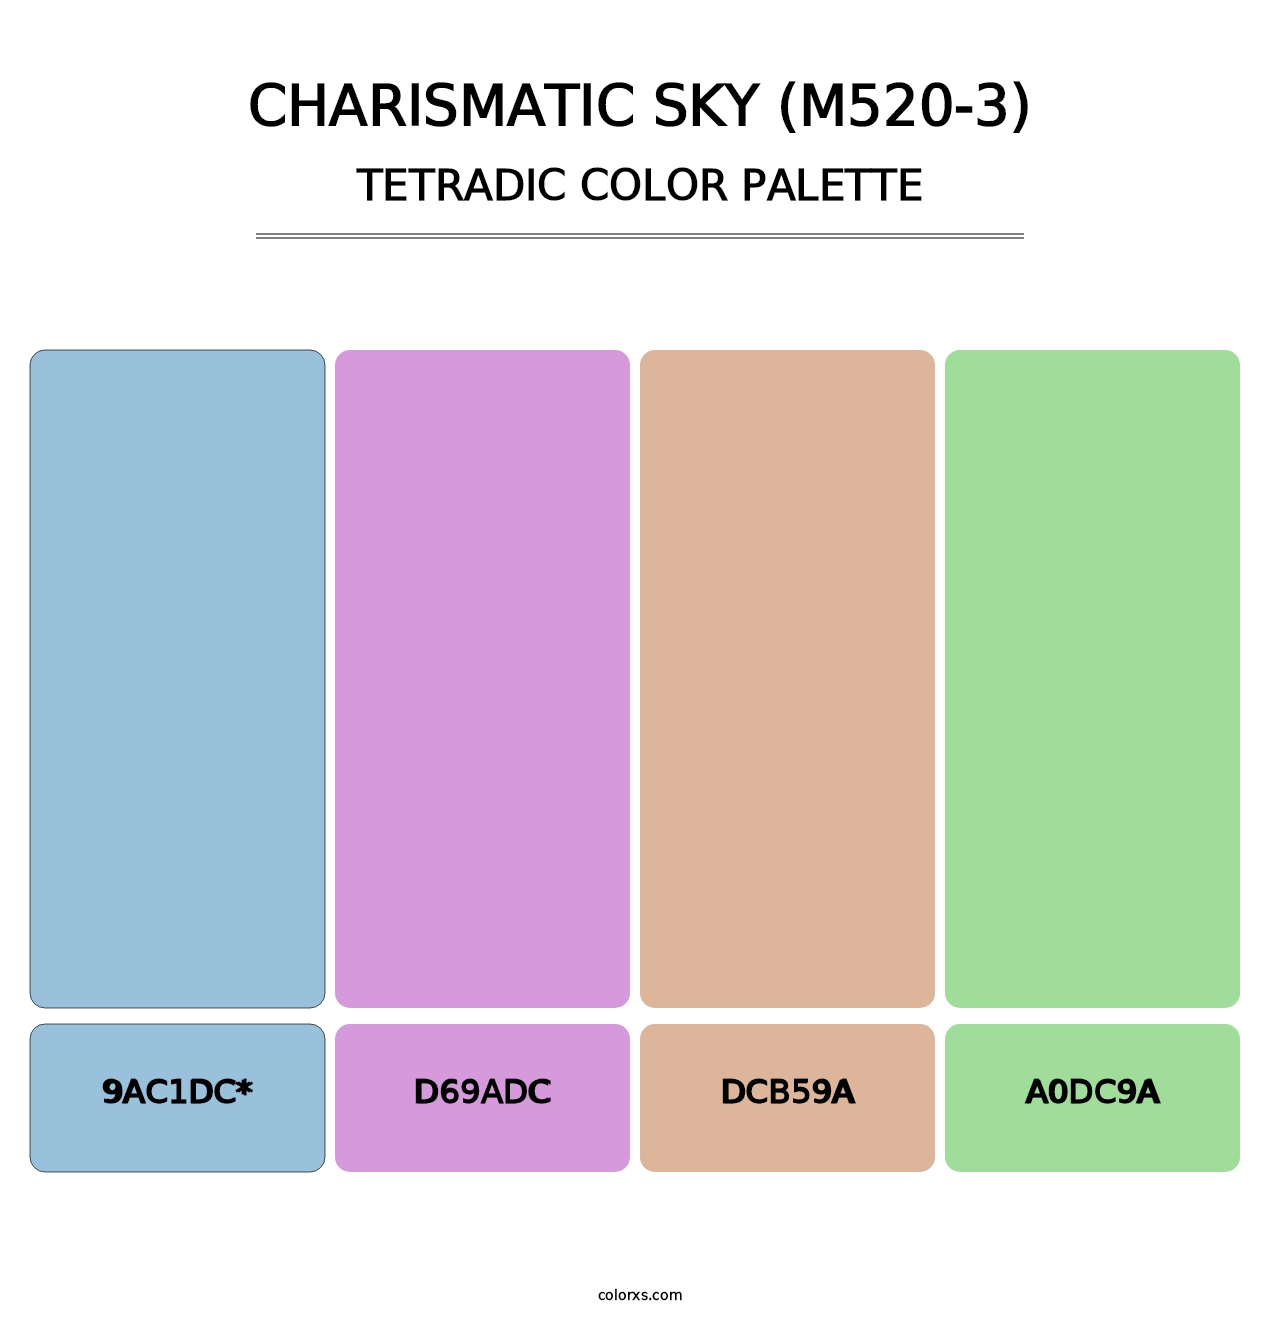 Charismatic Sky (M520-3) - Tetradic Color Palette